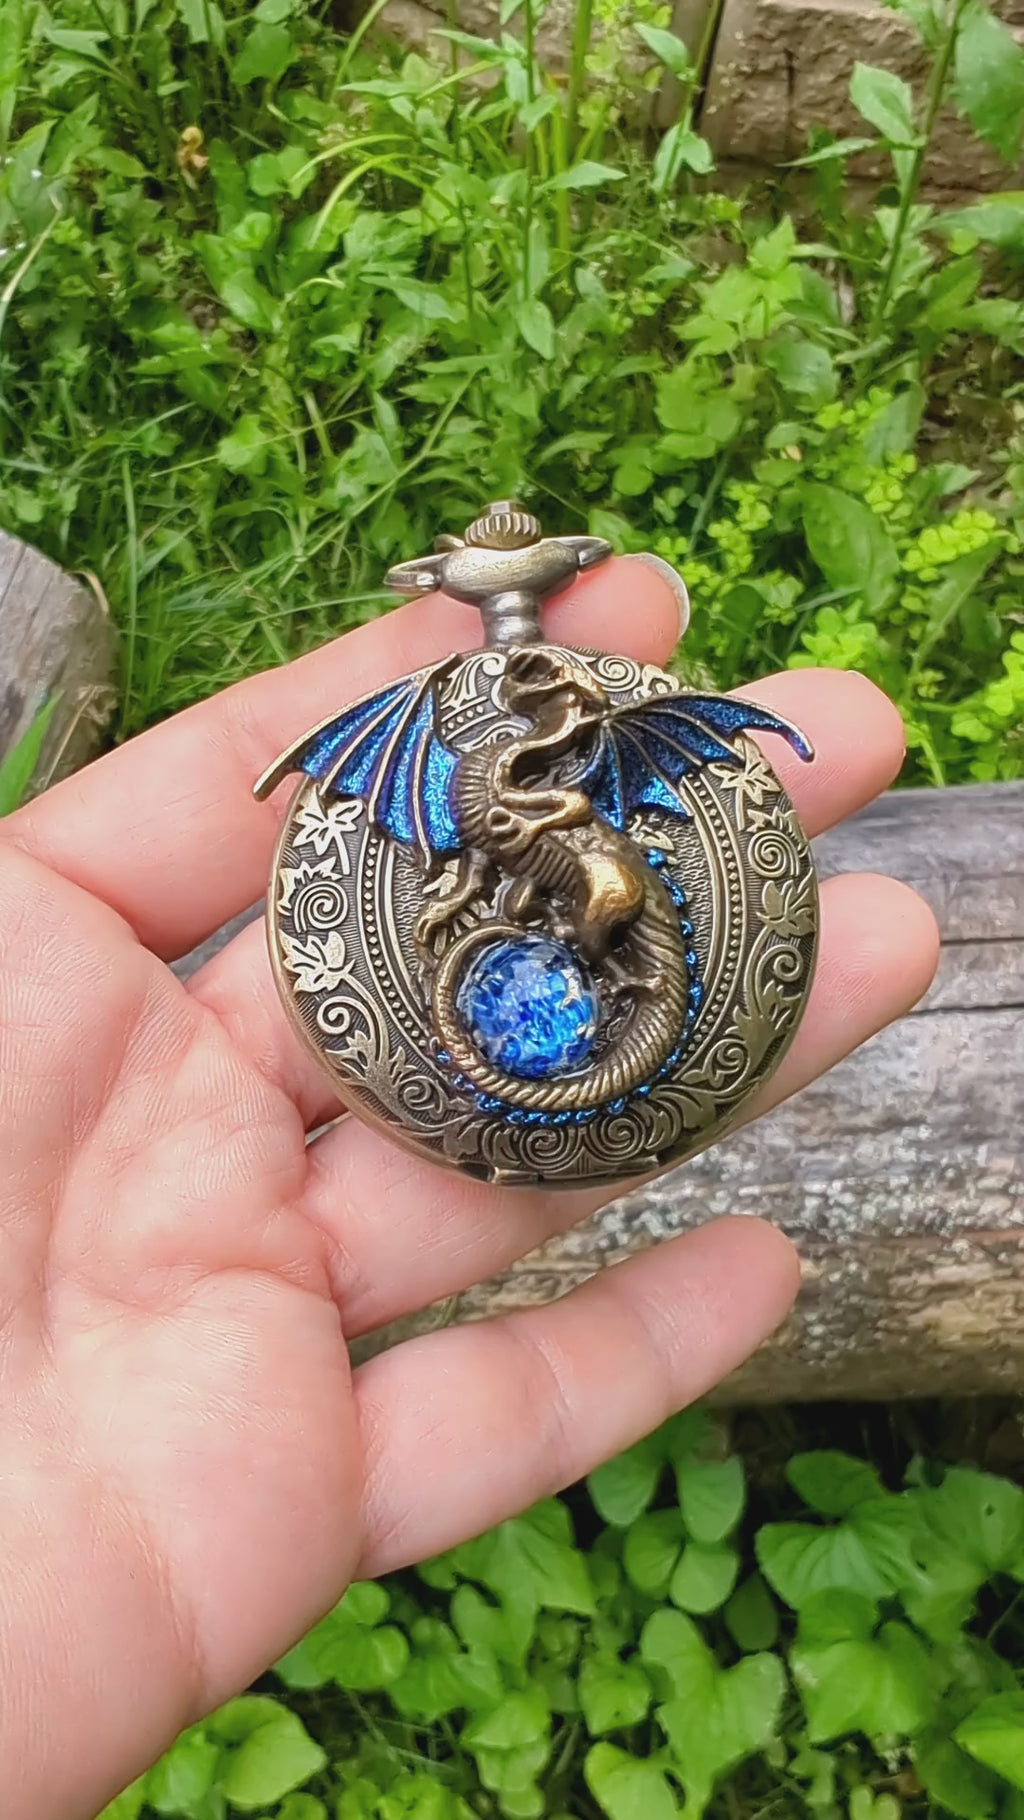  Dragon Necklace Pocket Watch with Blue Opal, Fantasy Jewelry, Gothic Jewelry